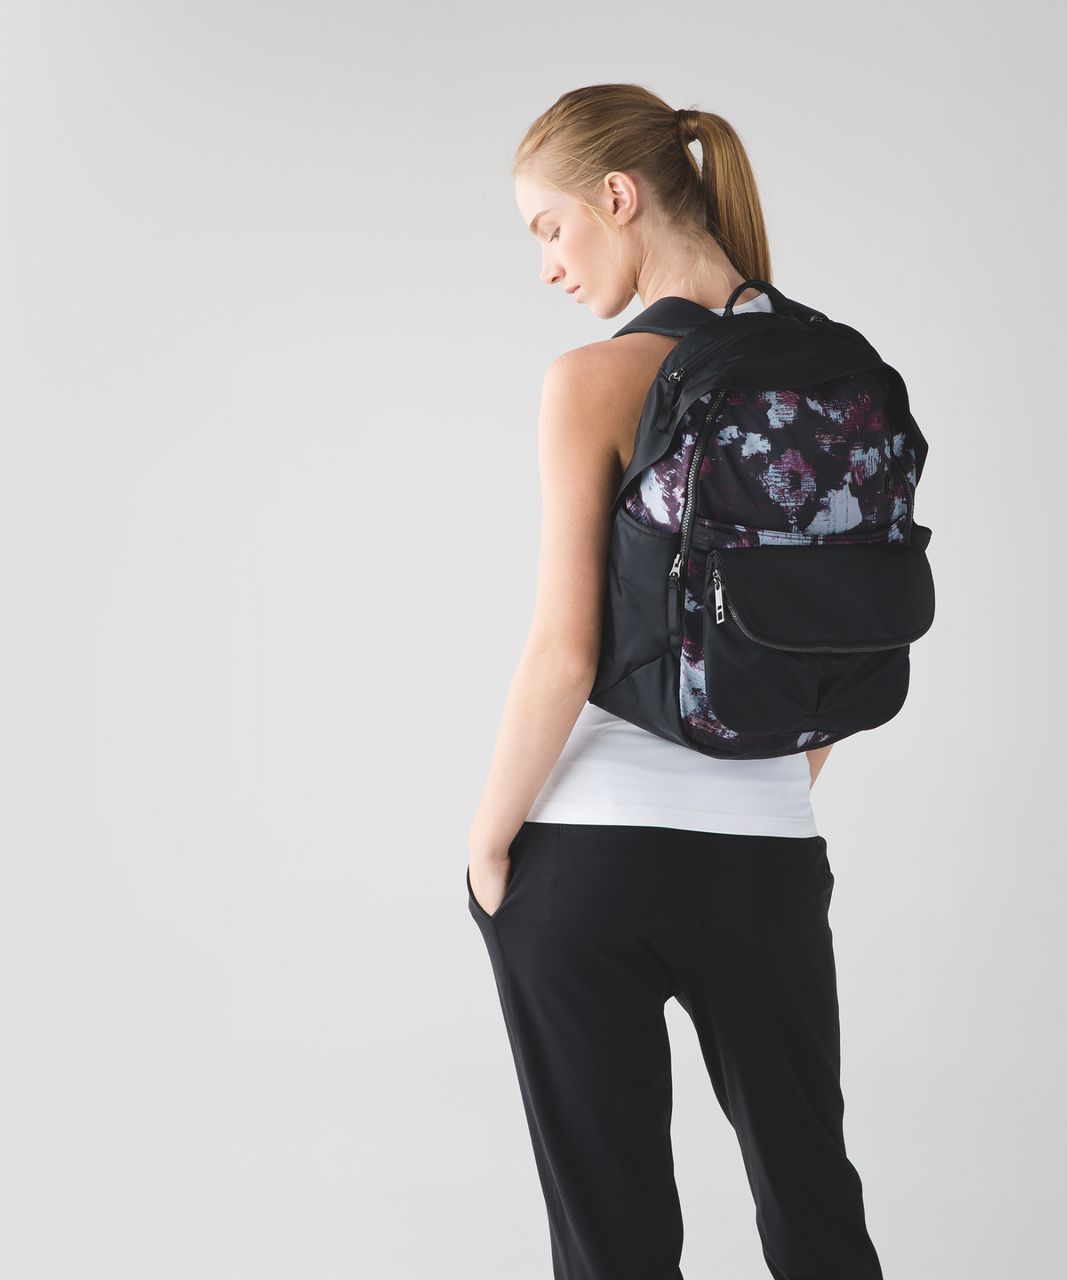 Lululemon All Day Backpack - Kara Blossom Multi / Black